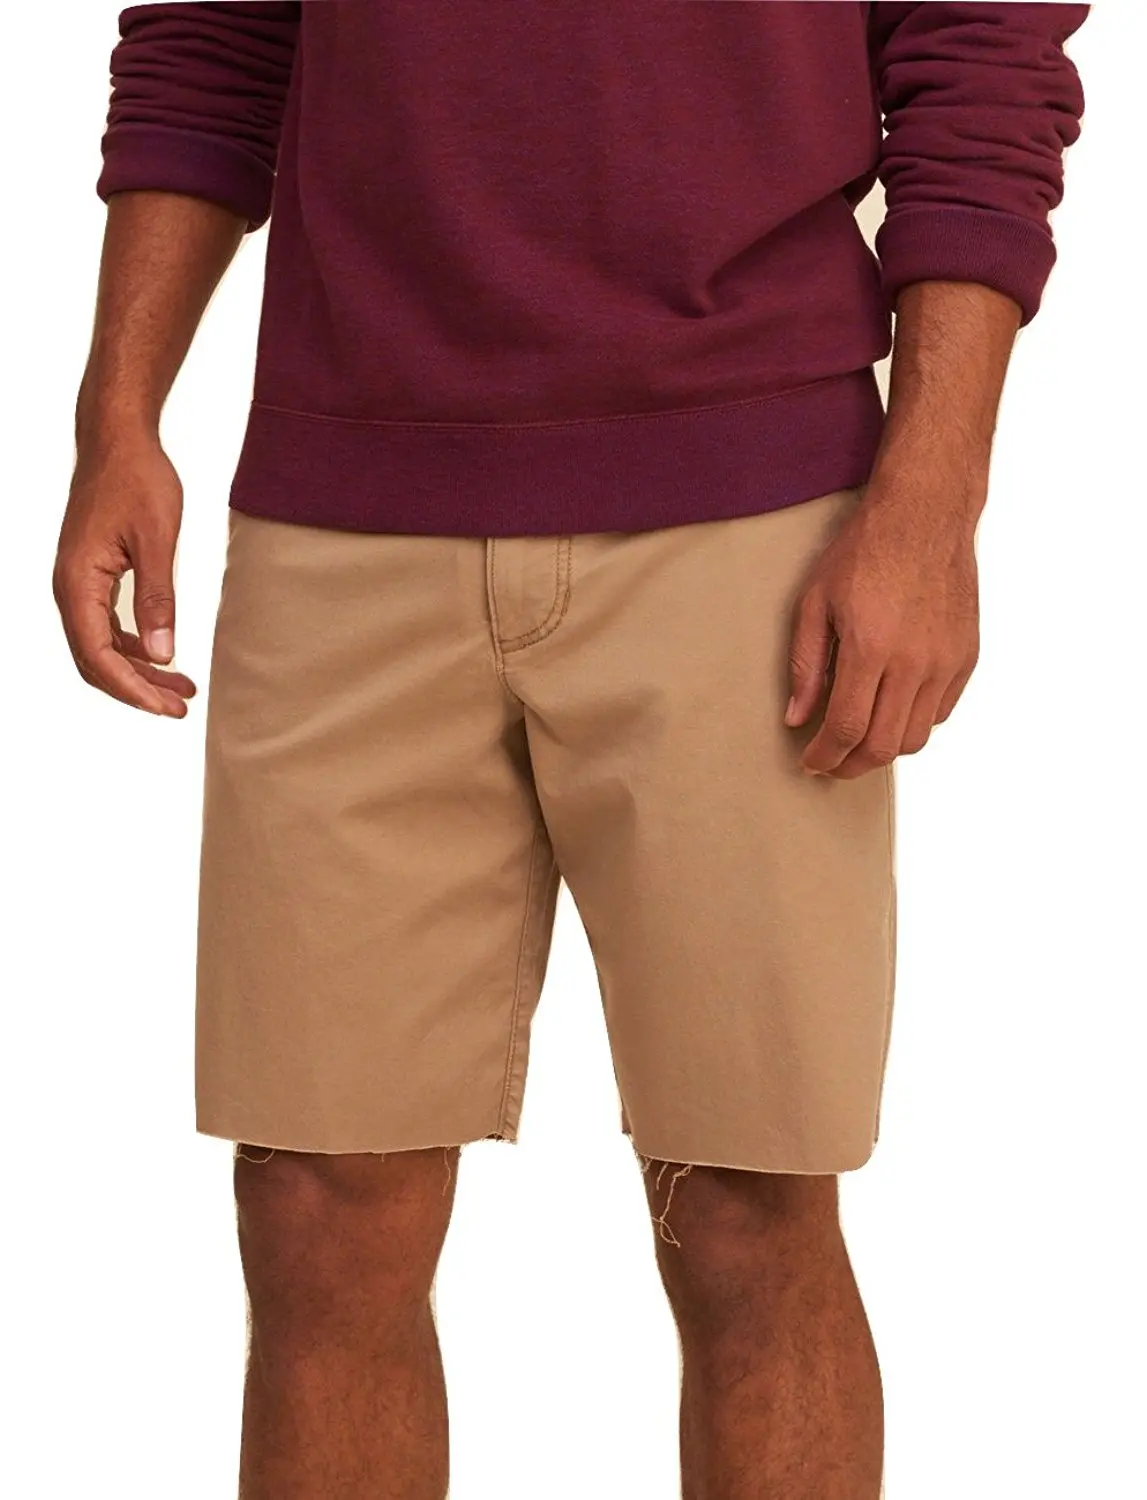 hollister khaki shorts mens